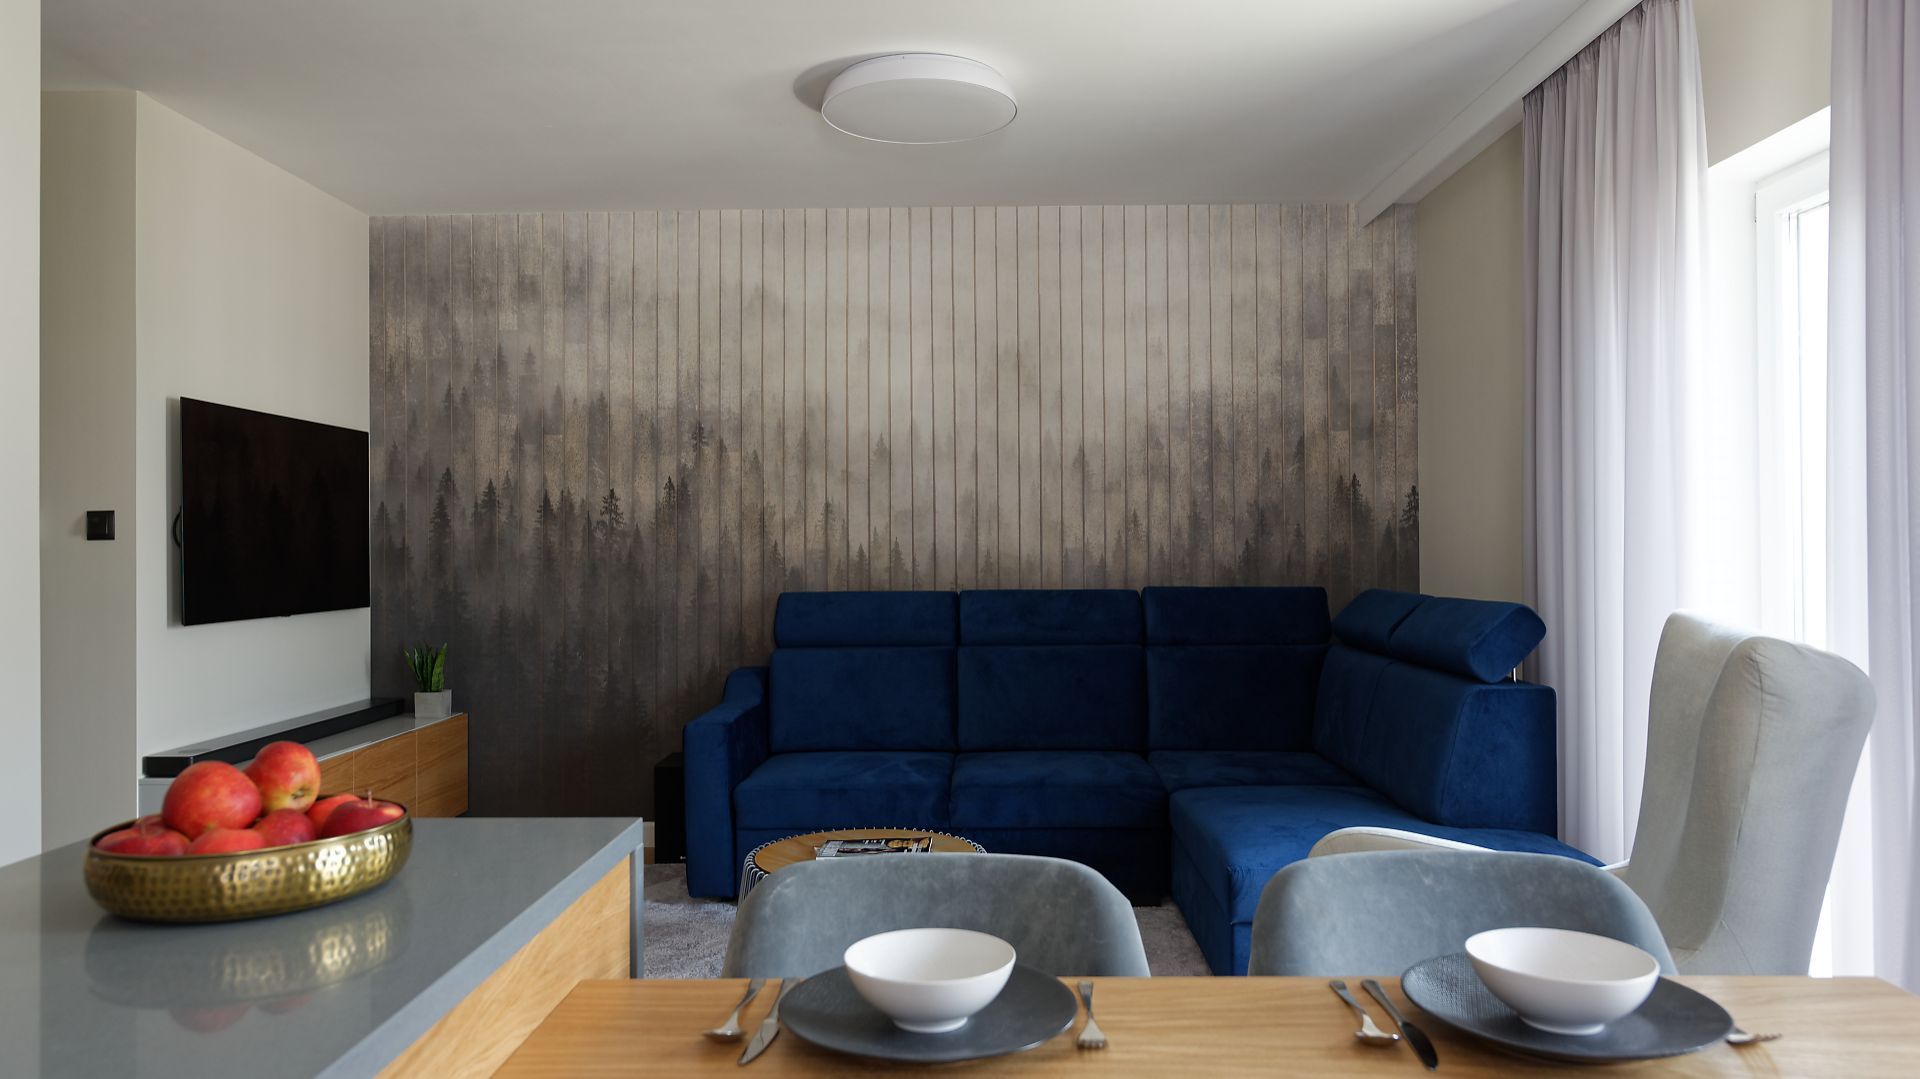 W tym niewielkim salonie za narożną kanapą znalazła się bardzo ciekawa tapeta. Projekt: pracownia M-Studio. Fot. Radek Słowik